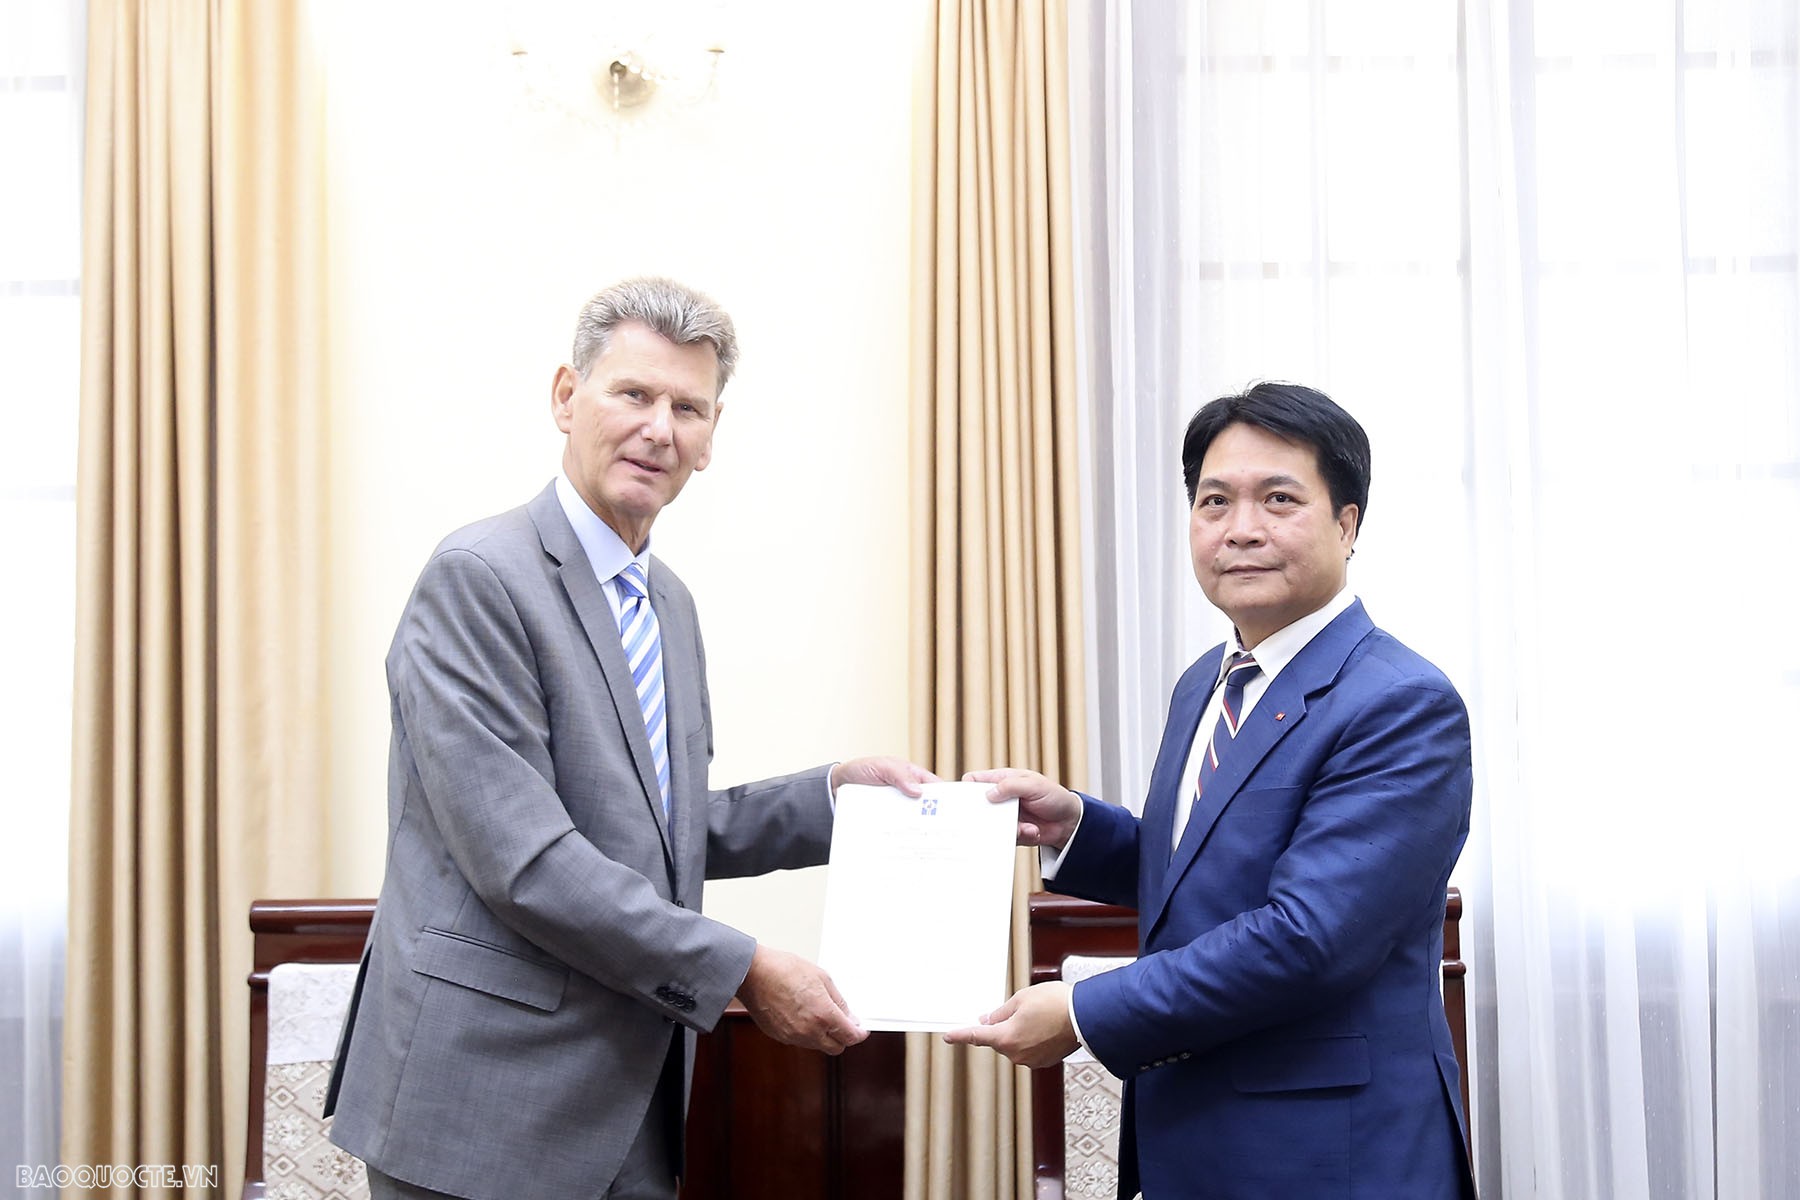 Tiếp nhận bản sao Thư ủy nhiệm bổ nhiệm Đại sứ Iceland, Đại sứ Cyprus, Đại sứ Turkmenistan tại Việt Nam